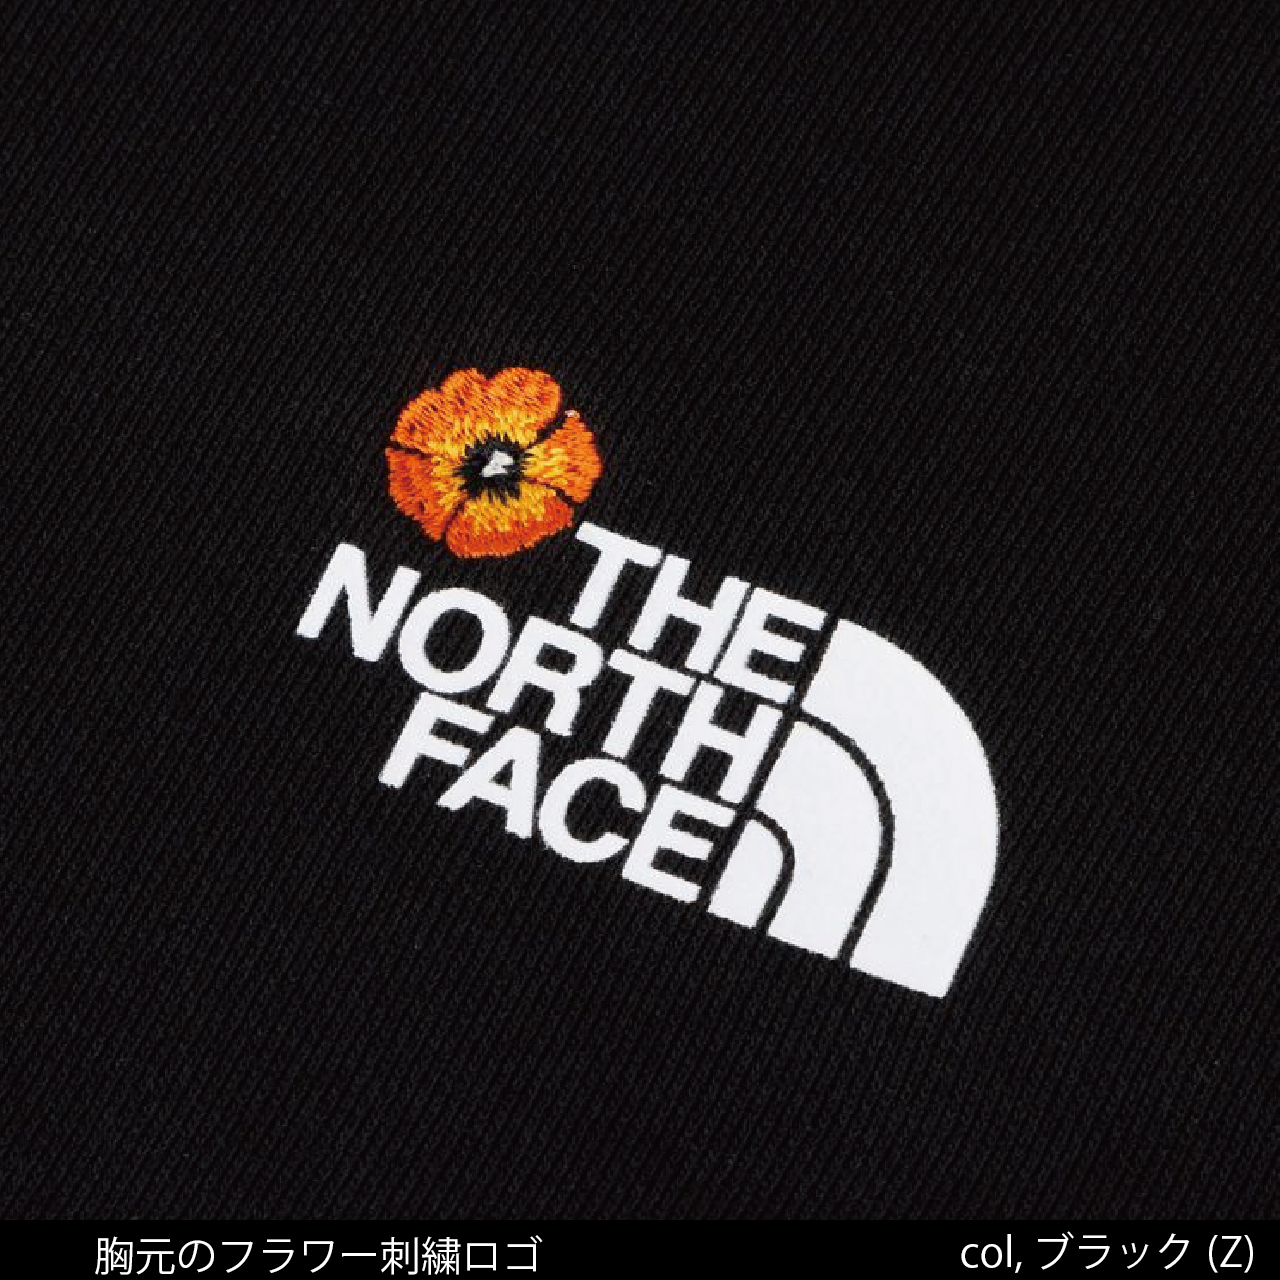 THE NORTH FACE ノースフェイス 国内正規品 フラワーロゴクルー Flower